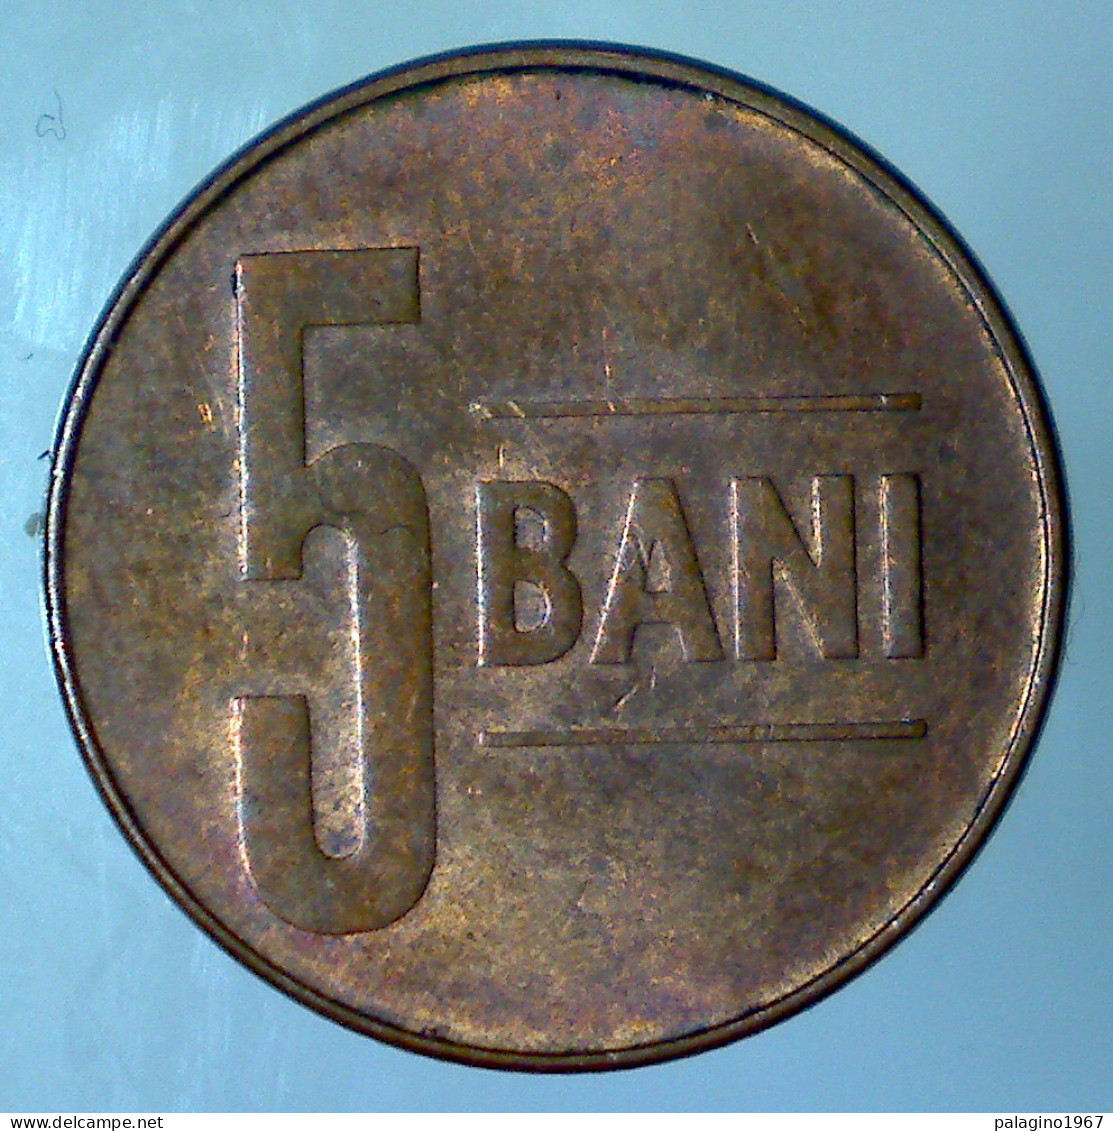 ROMANIA 5 Bani 2005 BB  - Roumanie